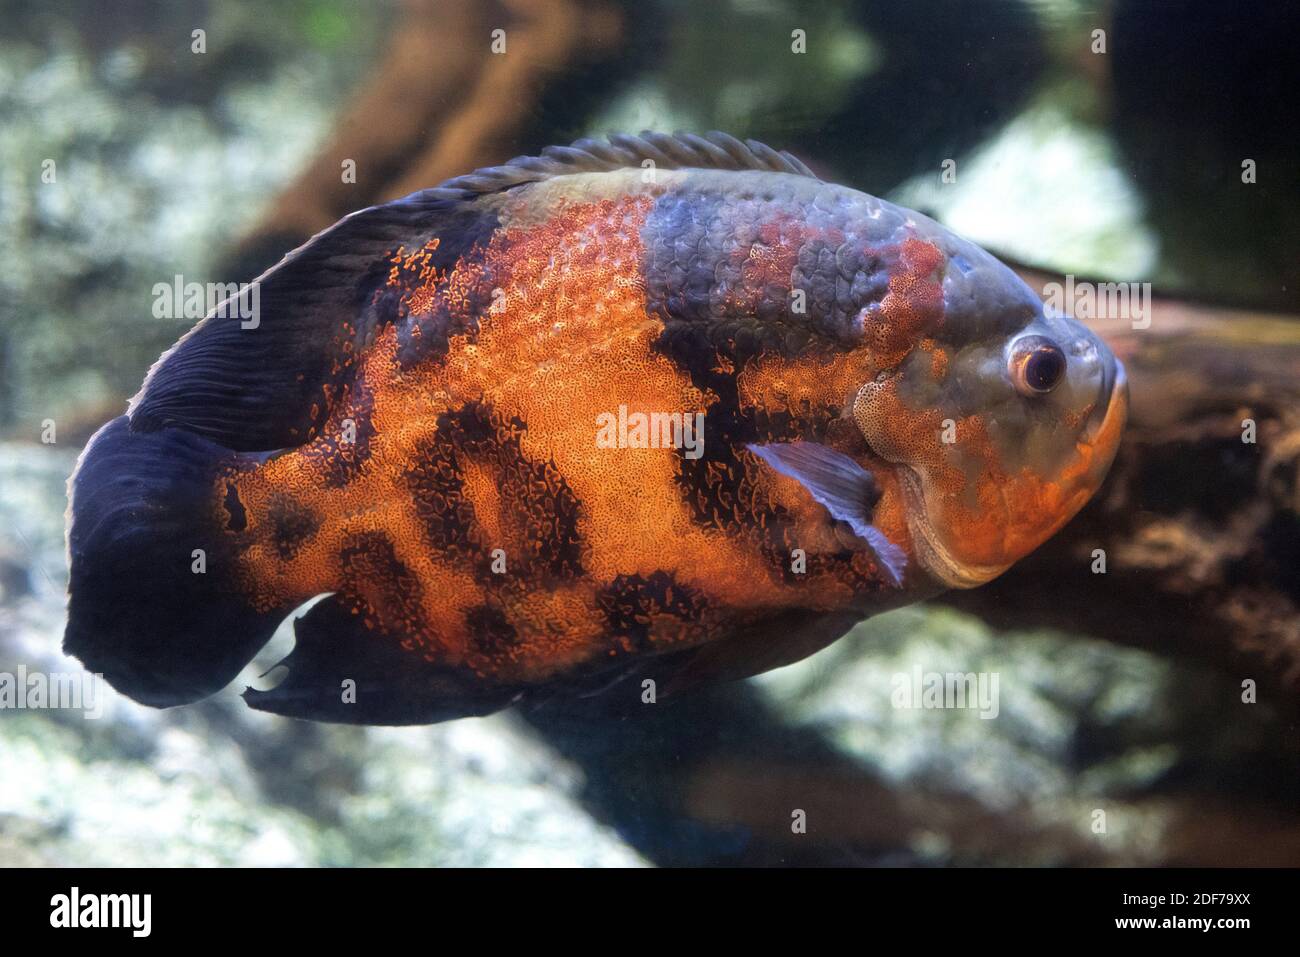 Oscar o tigre oscar (Astronotus ocellatus) è un pesce di acqua dolce originario del bacino del Rio delle Amazzoni. Foto Stock